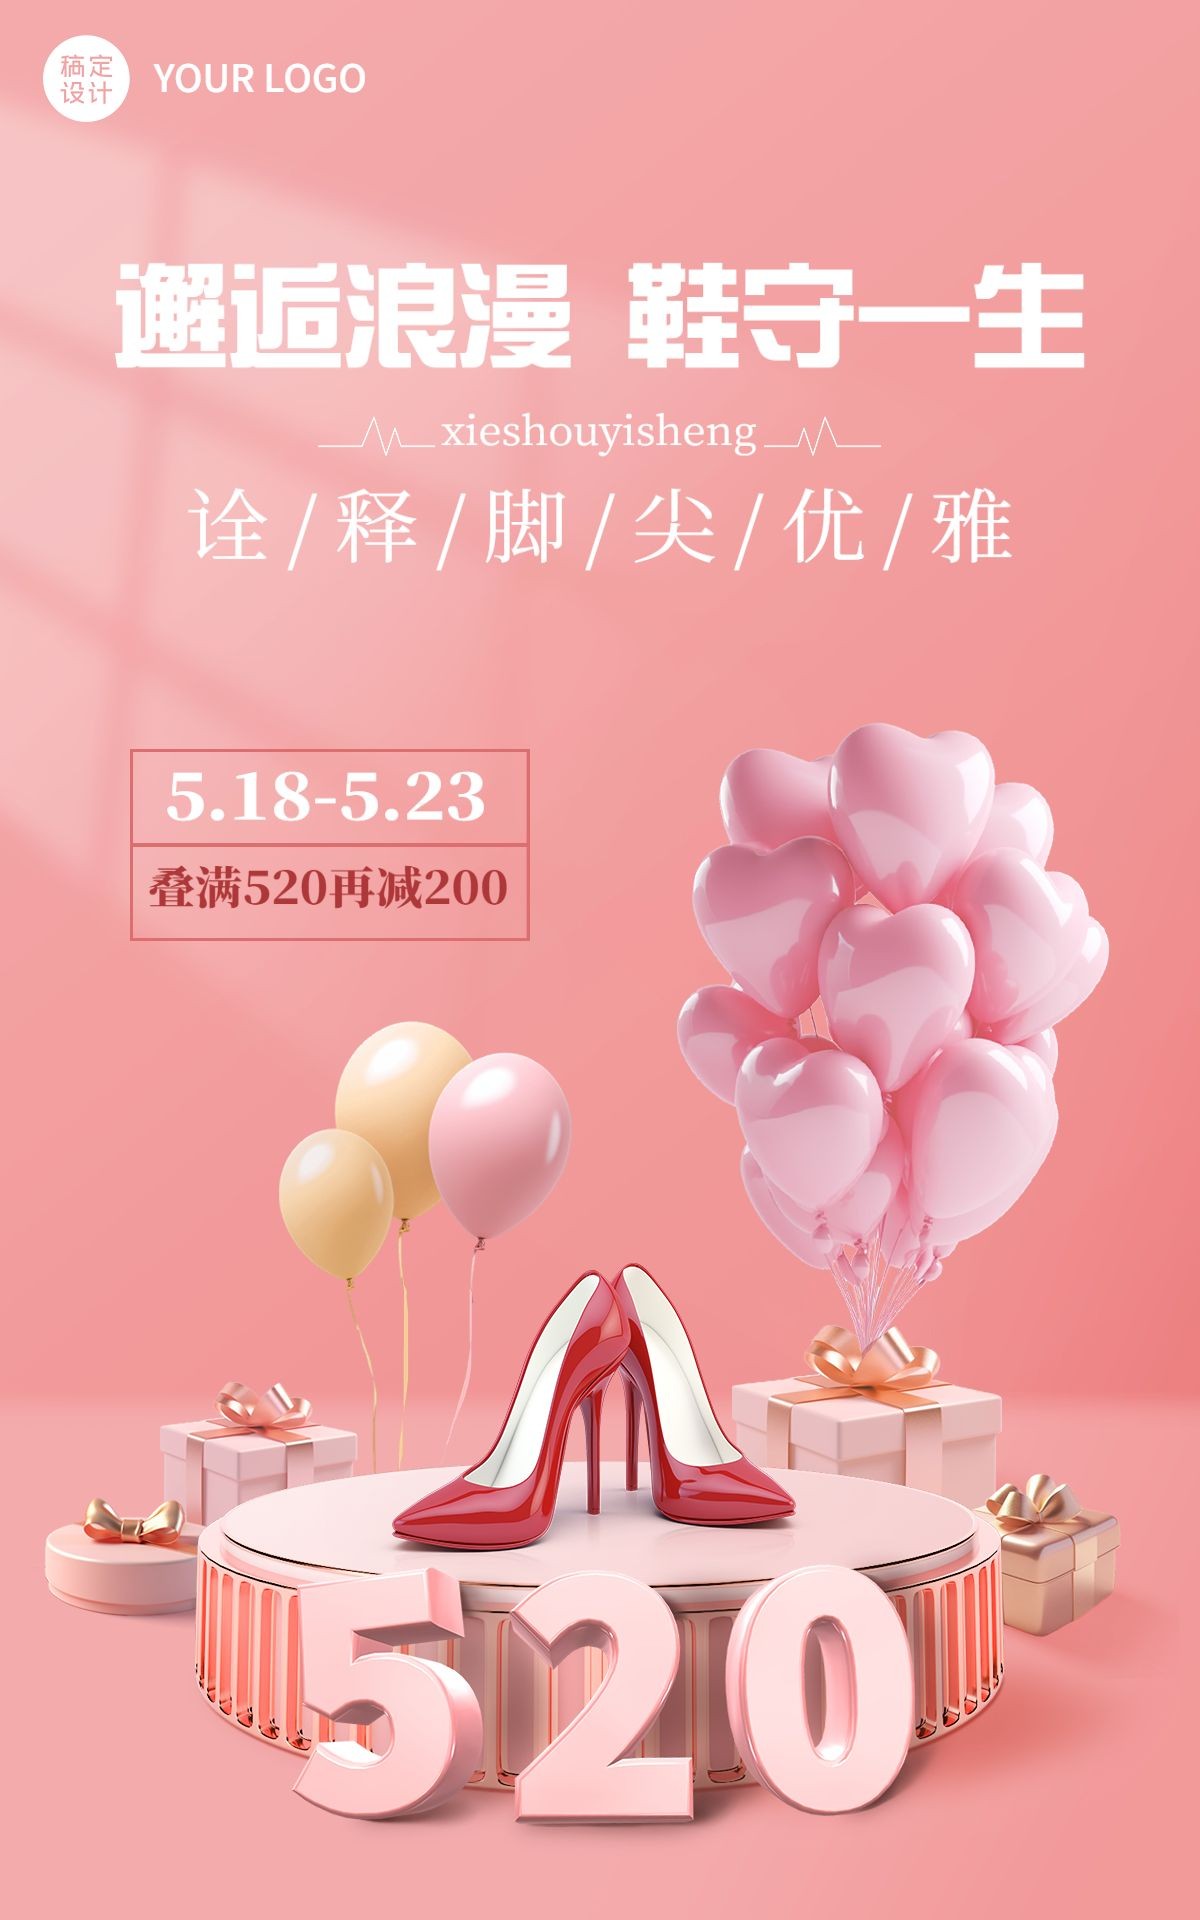 520情人节服饰箱包女鞋产品营销-3d展台浪漫风电商竖版海报套装预览效果